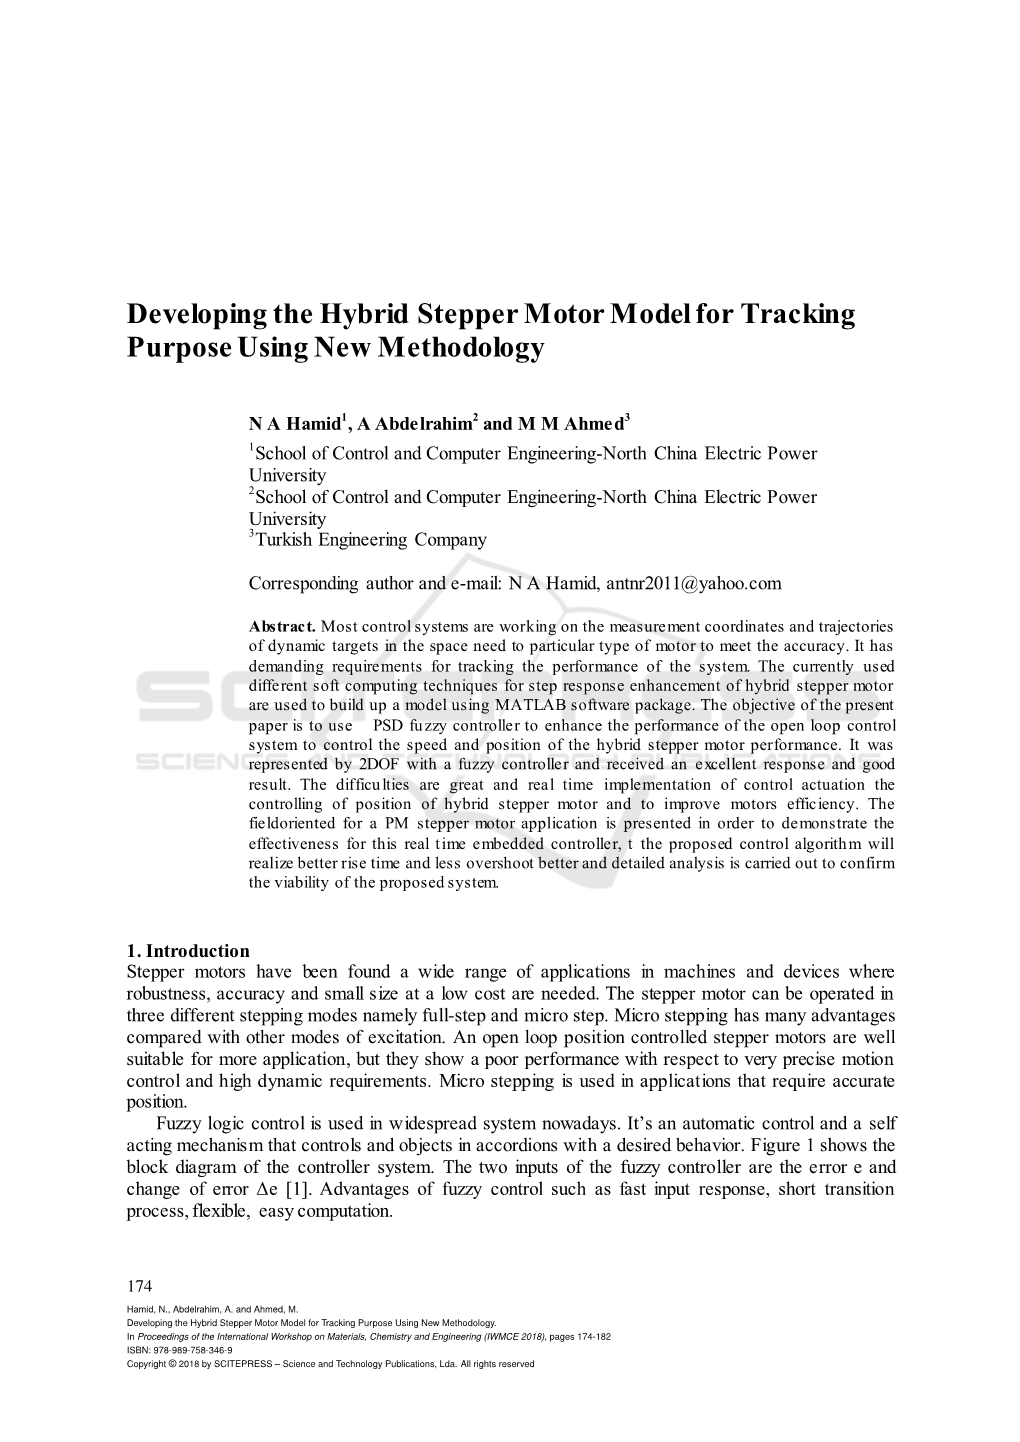 Developing the Hybrid Stepper Motor Model for Tracking Purpose Using New Methodology